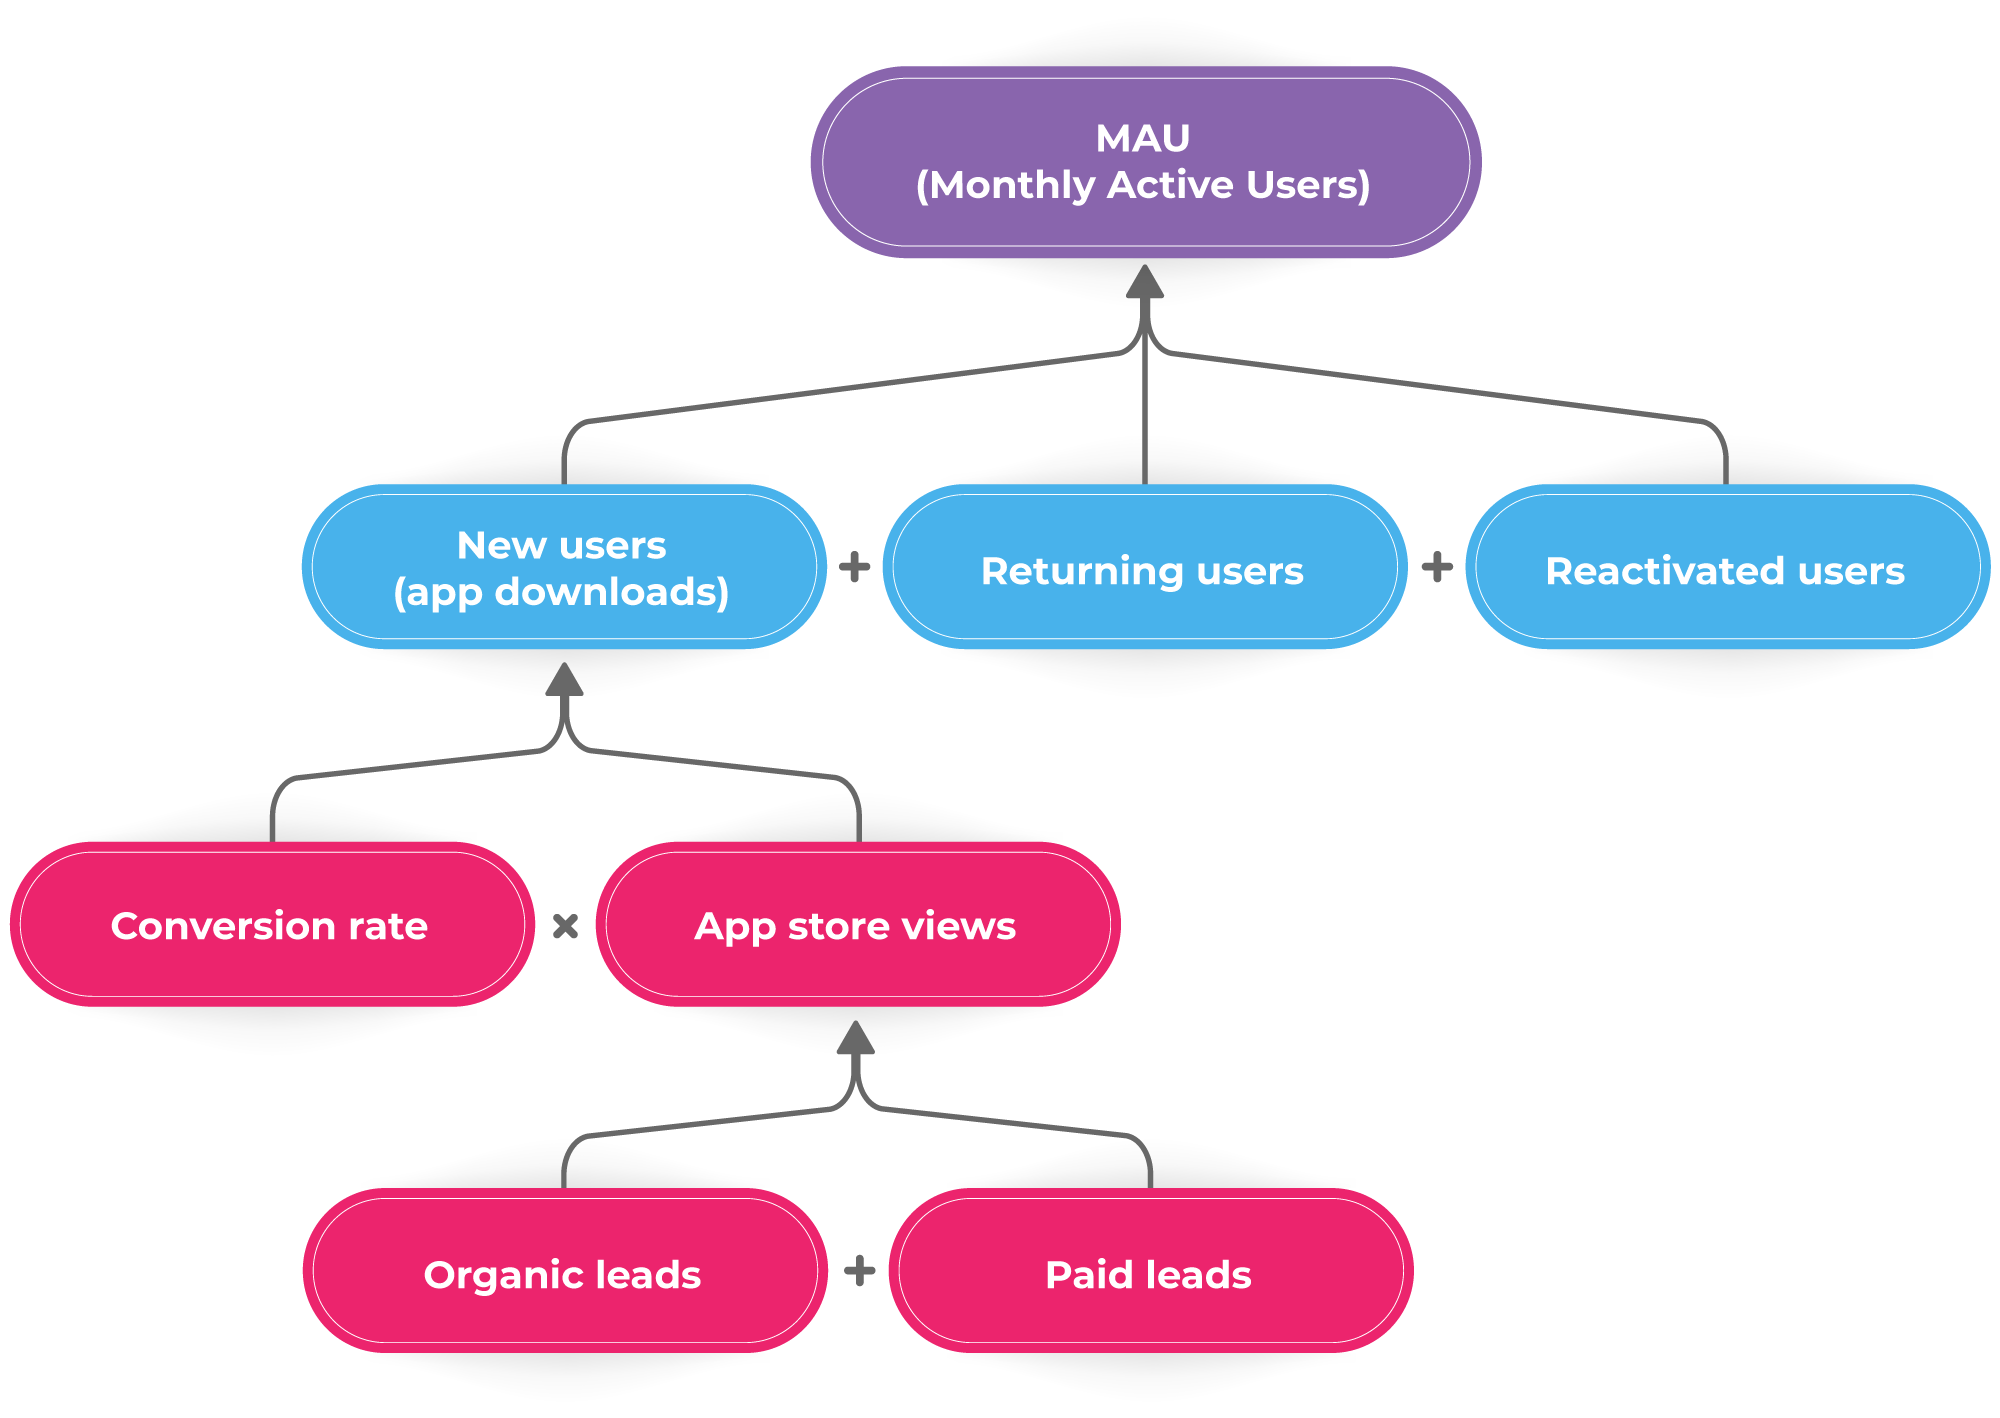 Example of a KPI tree